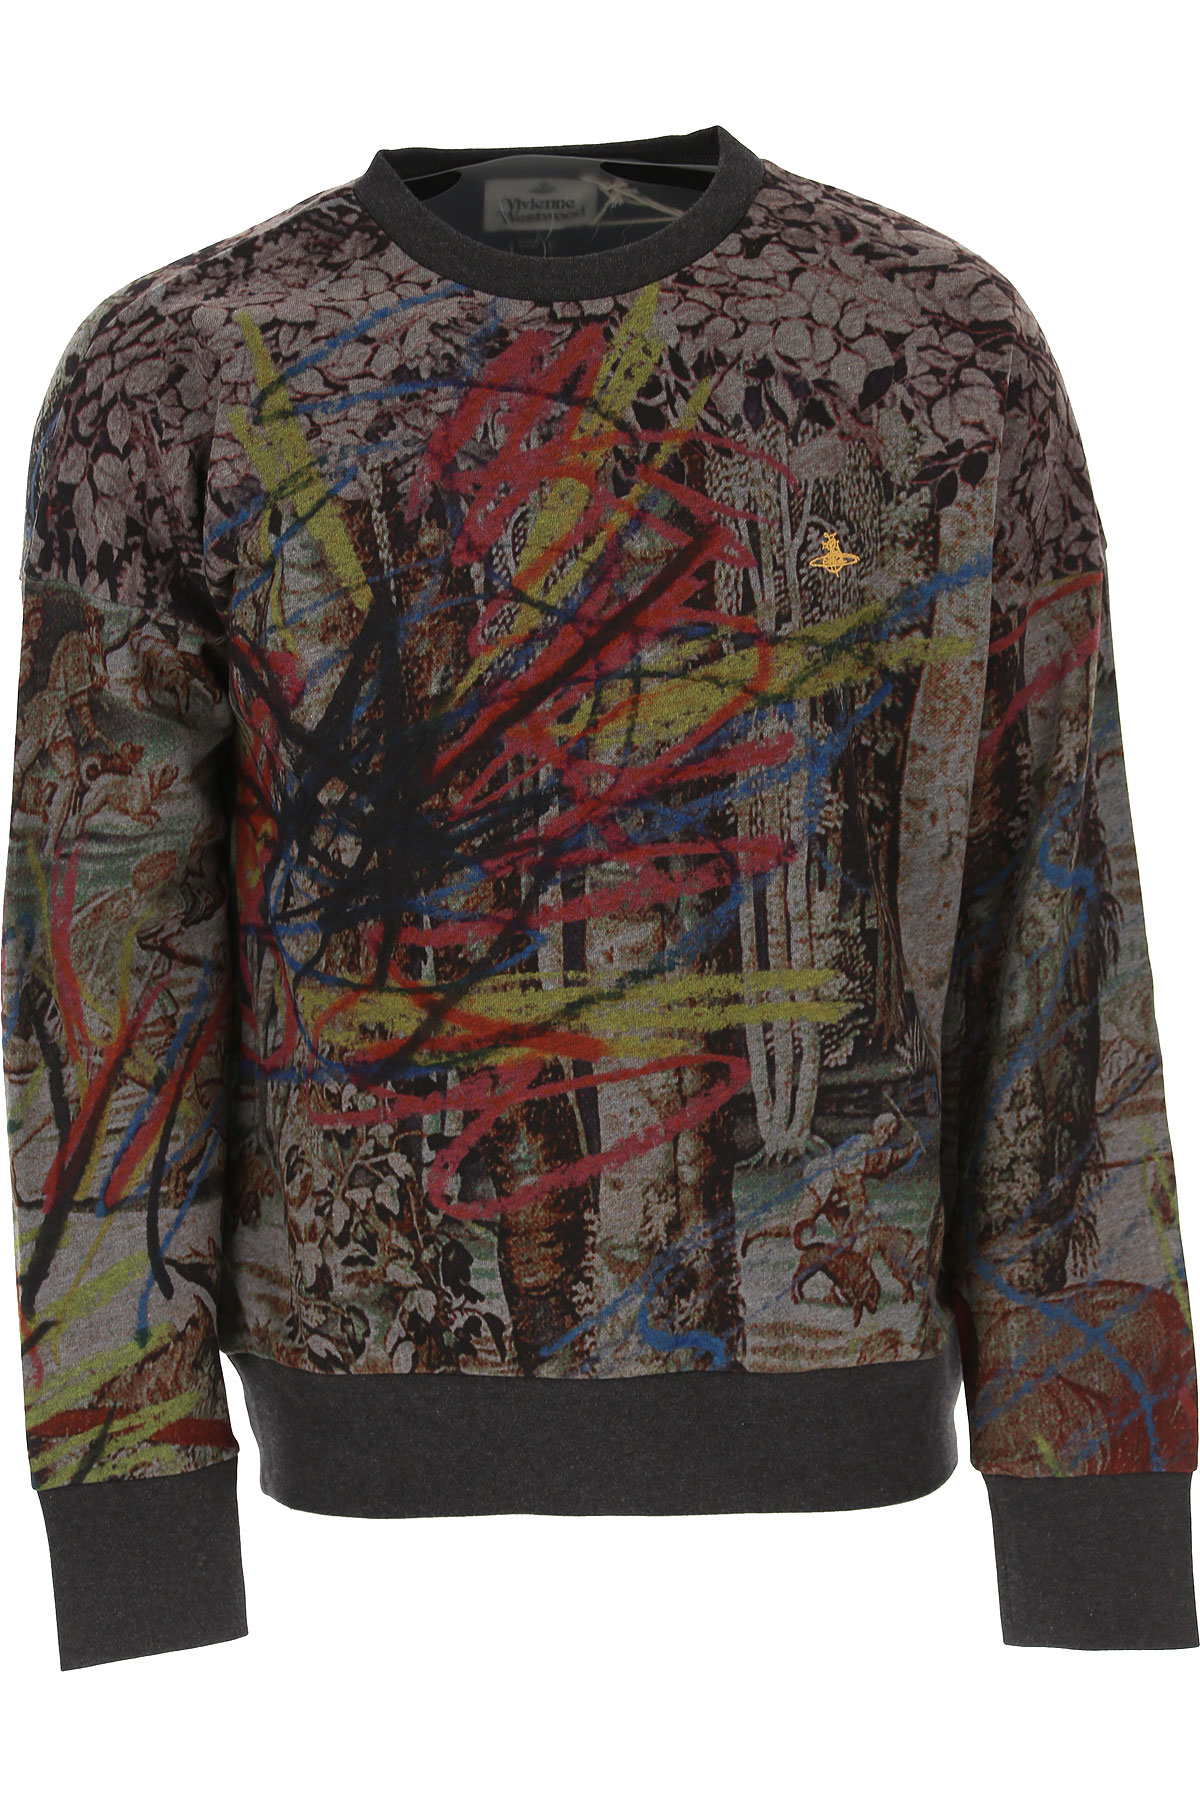 Vivienne Westwood Sweatshirt für Herren, Kapuzenpulli, Hoodie, Sweats Günstig im Sale, Mehrfarbig, Baumwolle, 2017, L M S